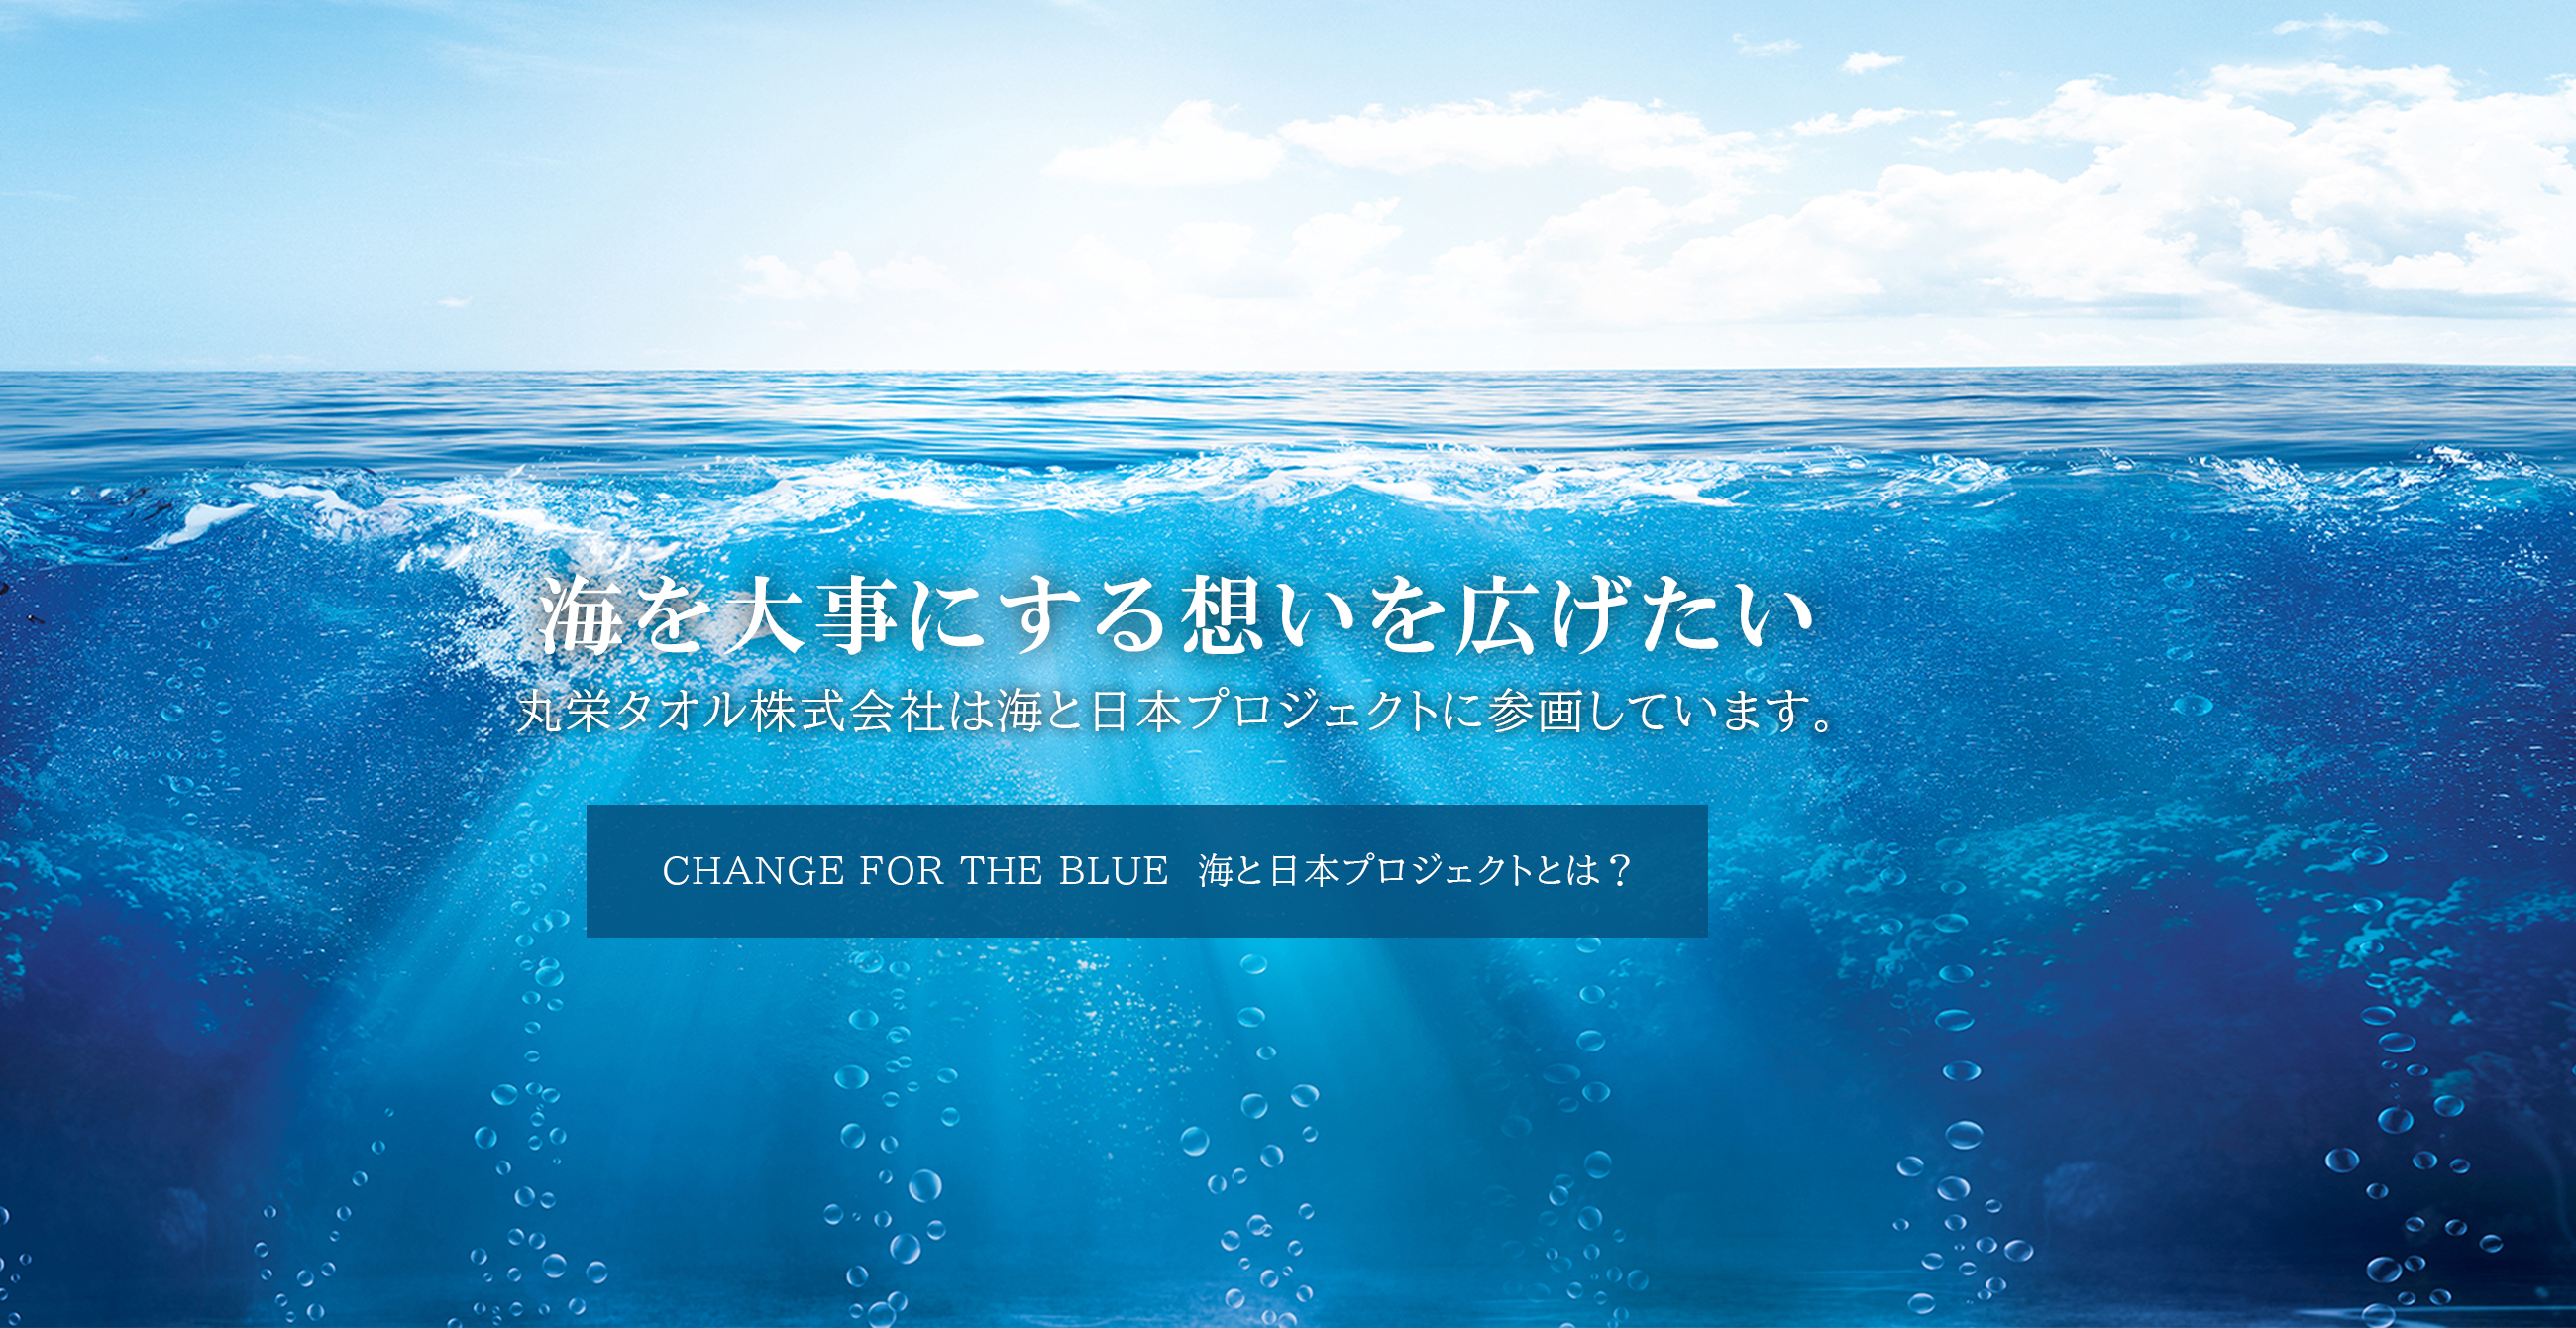 丸栄タオル株式会社は海と日本プロジェクトに参画しています